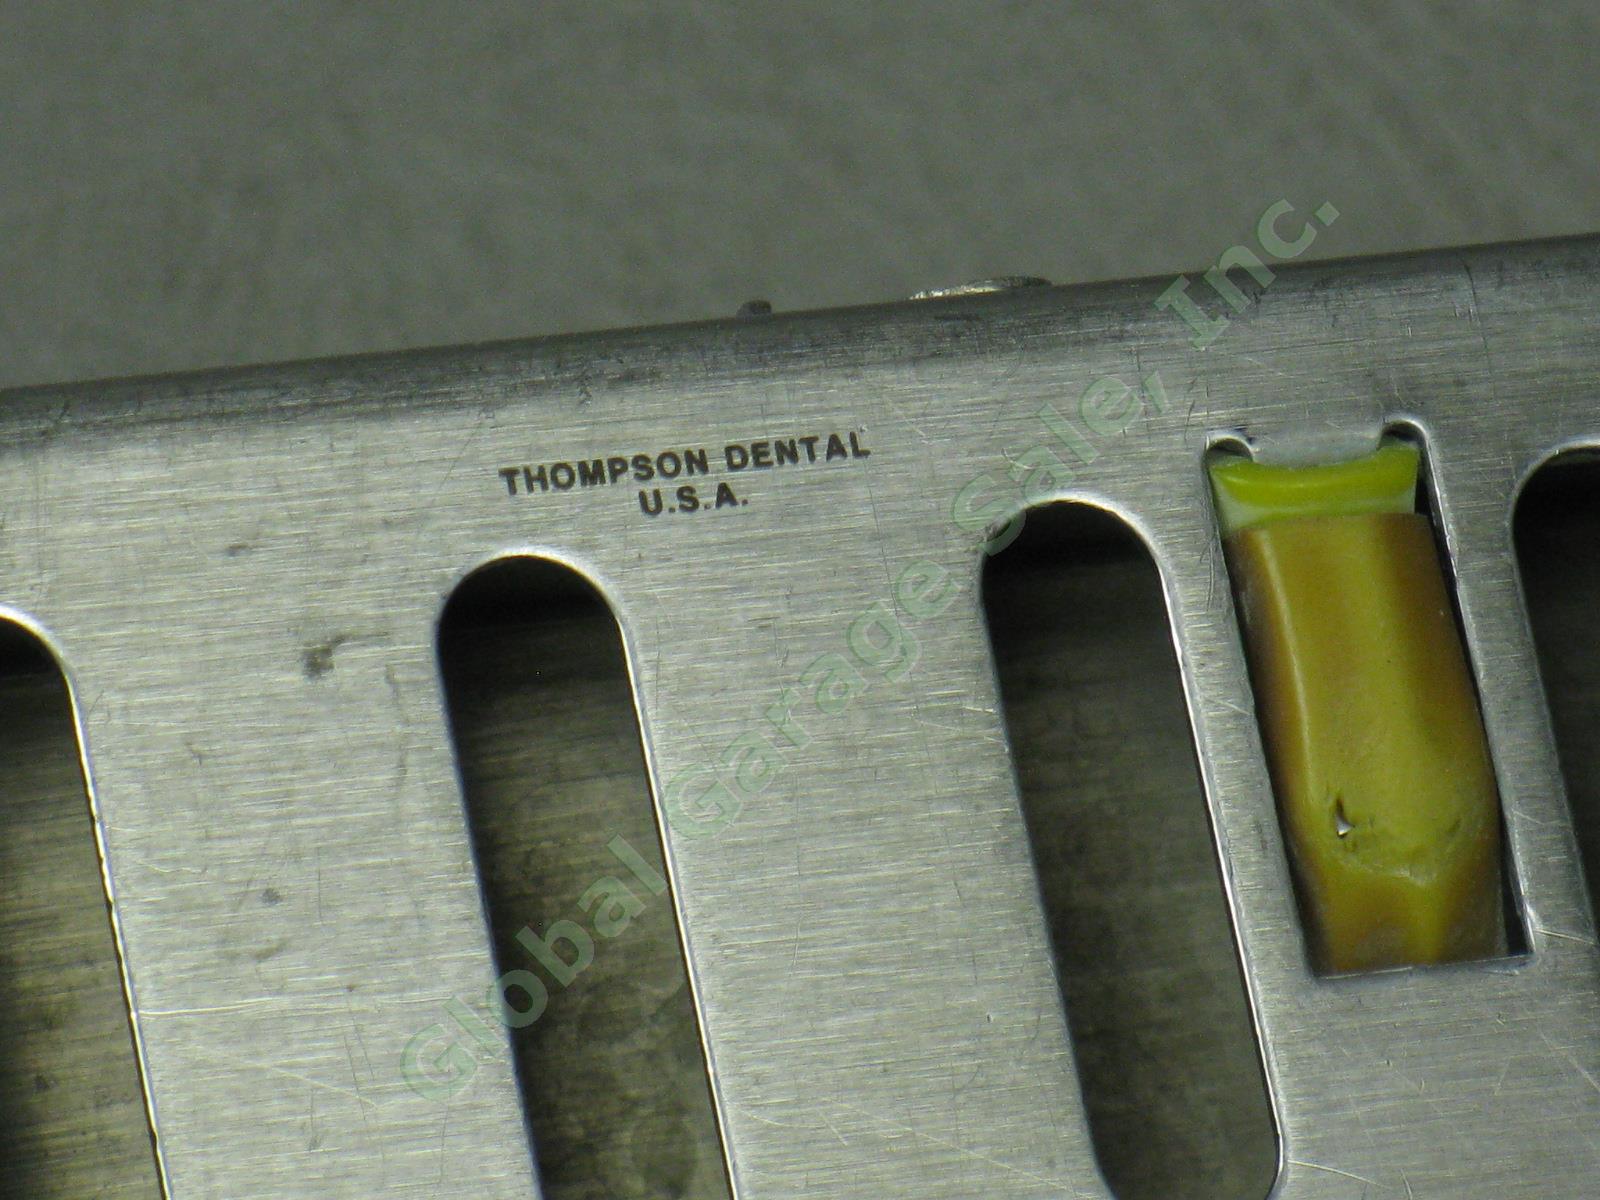 12 Thompson Dental USA 5x8 Instrument Autoclave Sterilizer Cassettes Lot NR! 2